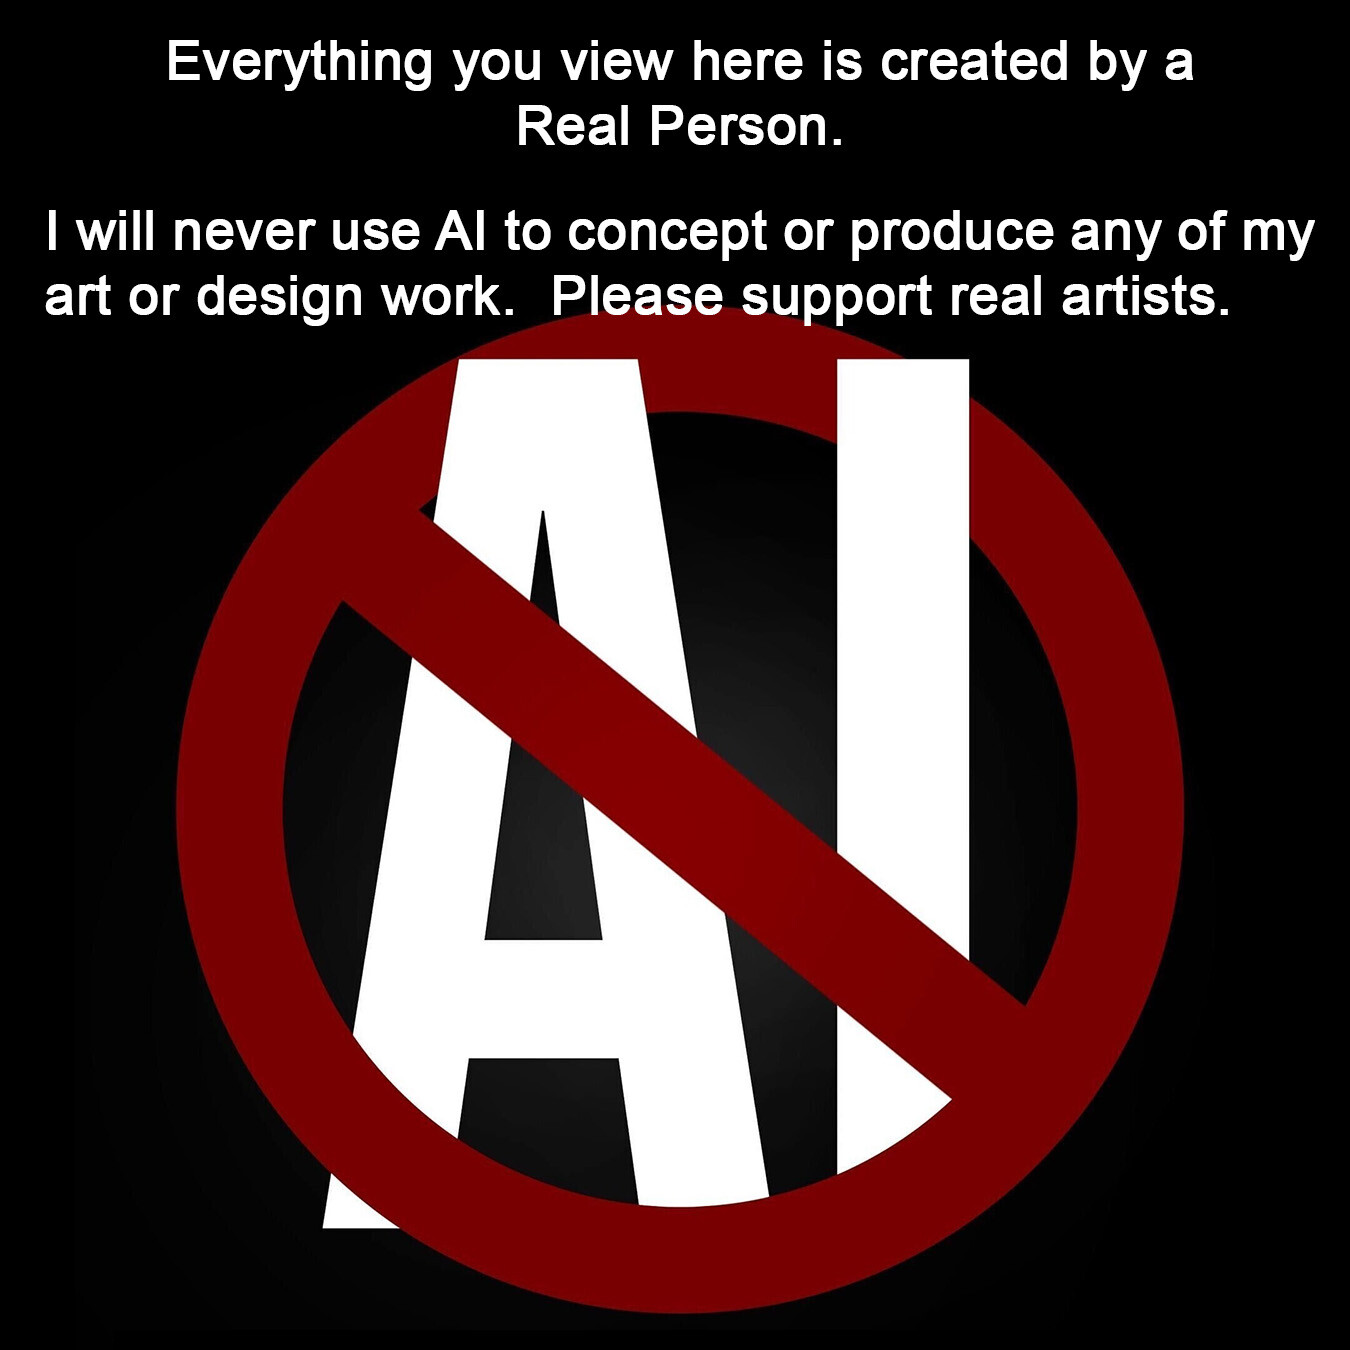 No AI